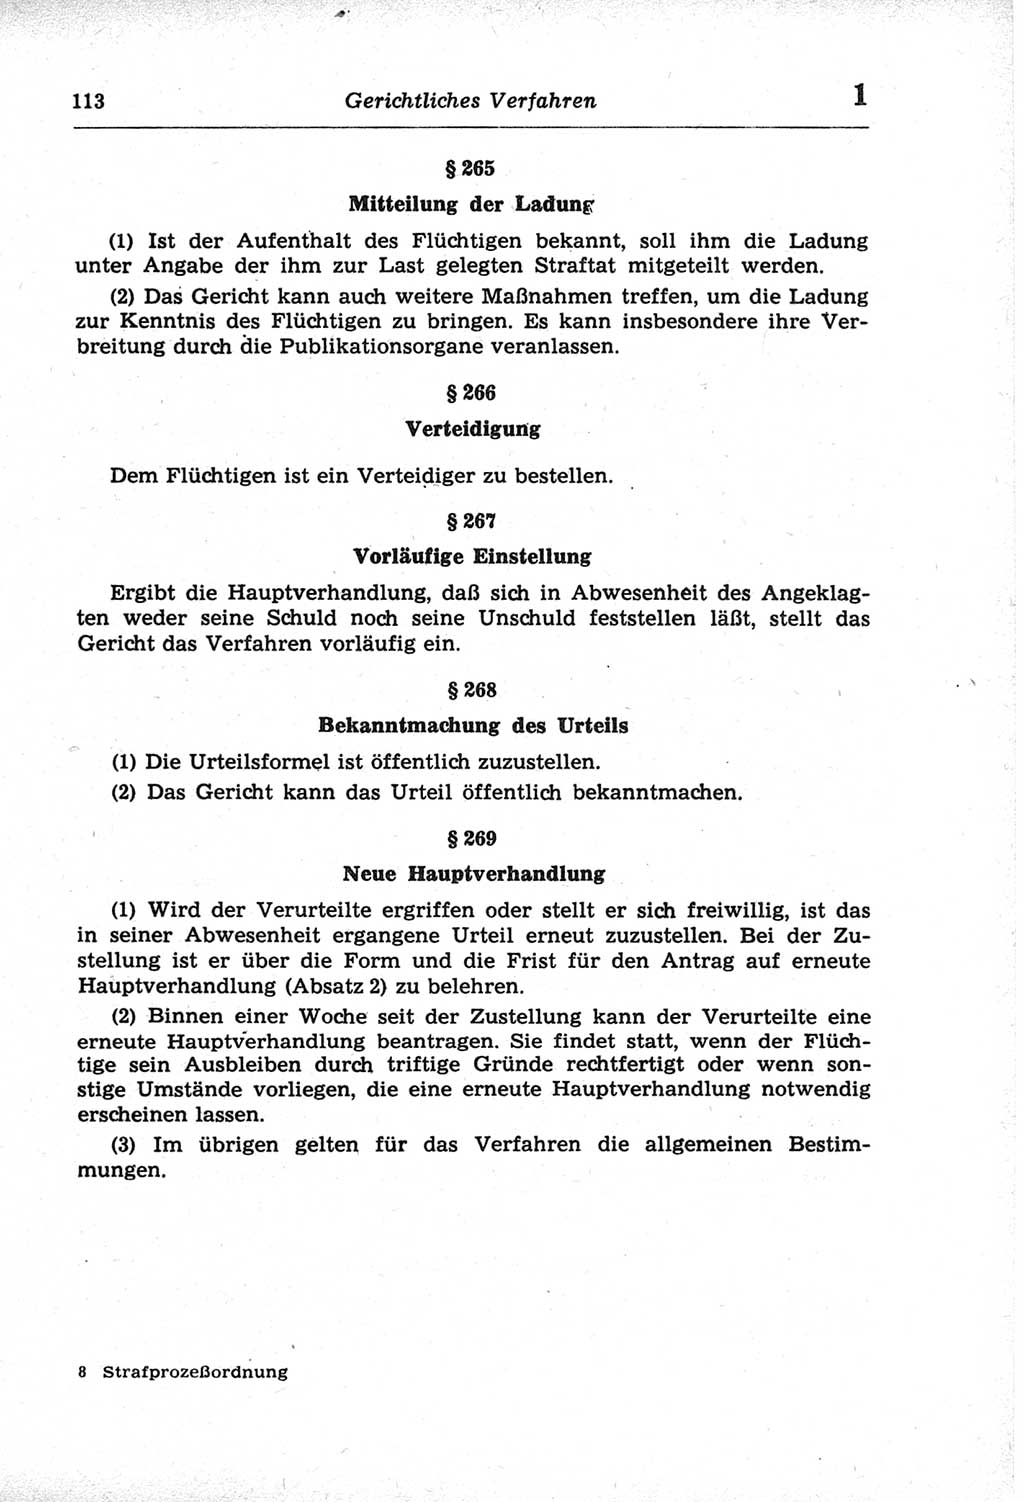 Strafprozeßordnung (StPO) der Deutschen Demokratischen Republik (DDR) und angrenzende Gesetze und Bestimmungen 1968, Seite 113 (StPO Ges. Bstgn. DDR 1968, S. 113)